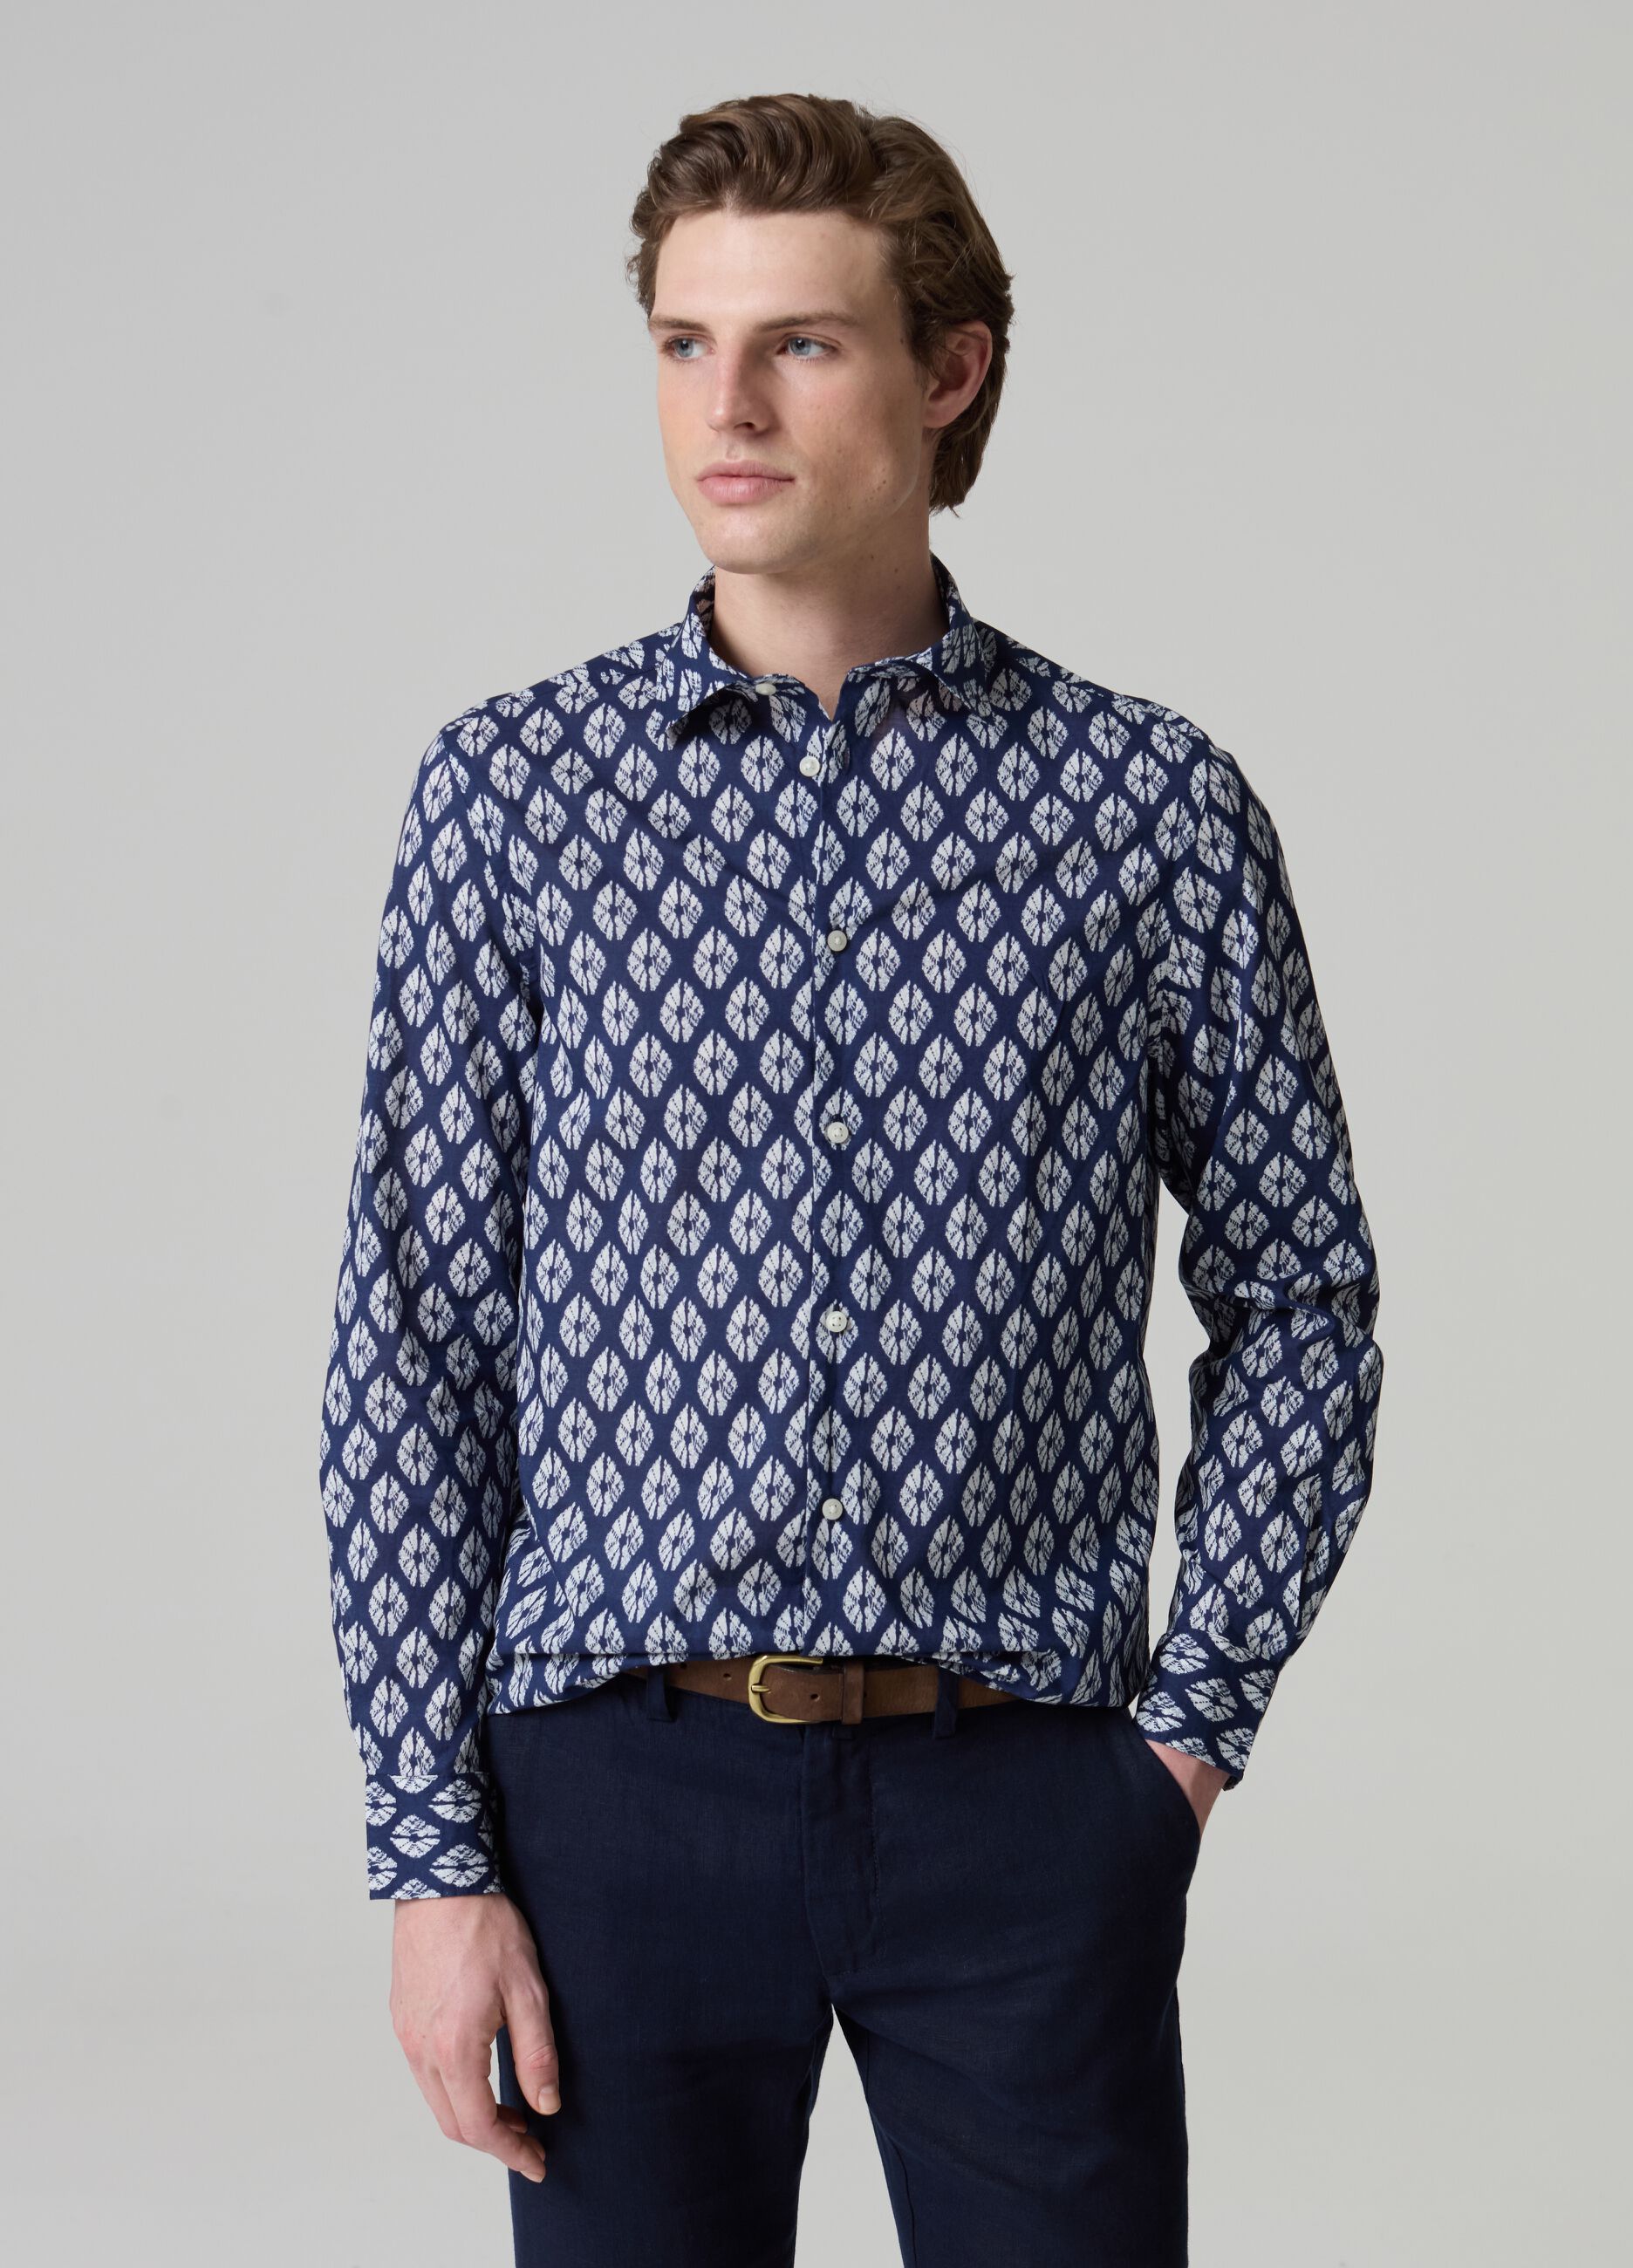 Cotton shirt with diamond pattern